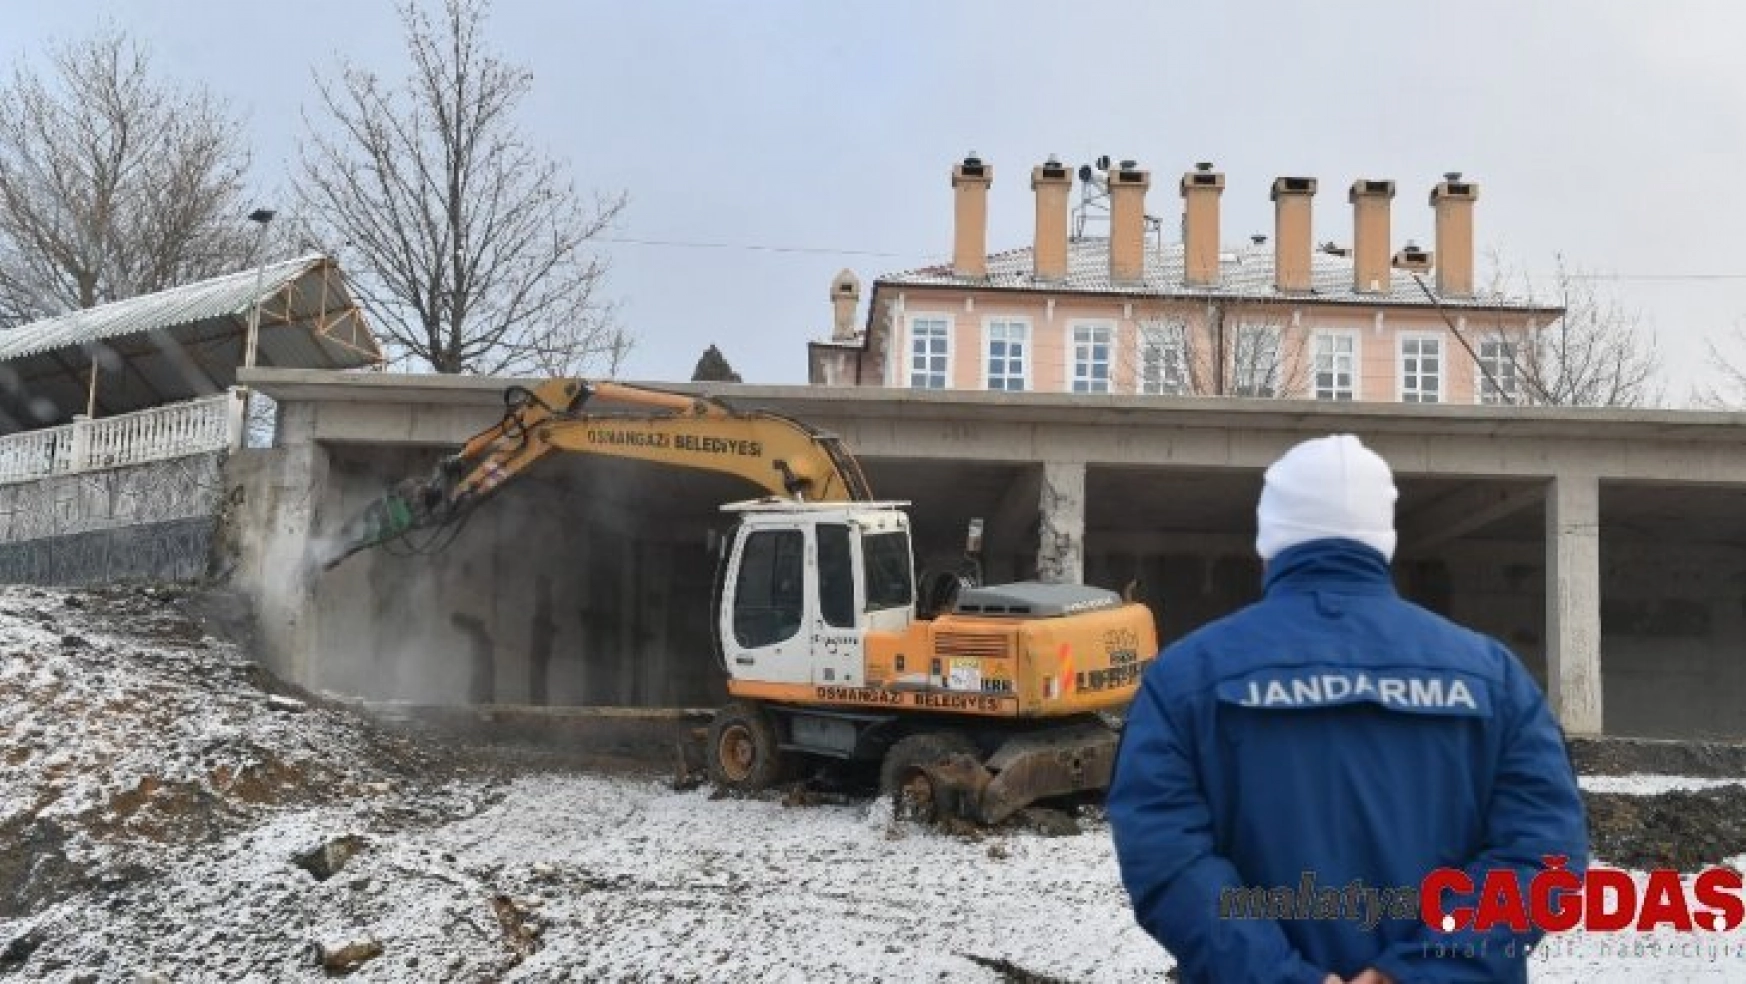 Uludağ'daki restoranın kaçak bölümleri yıkıldı